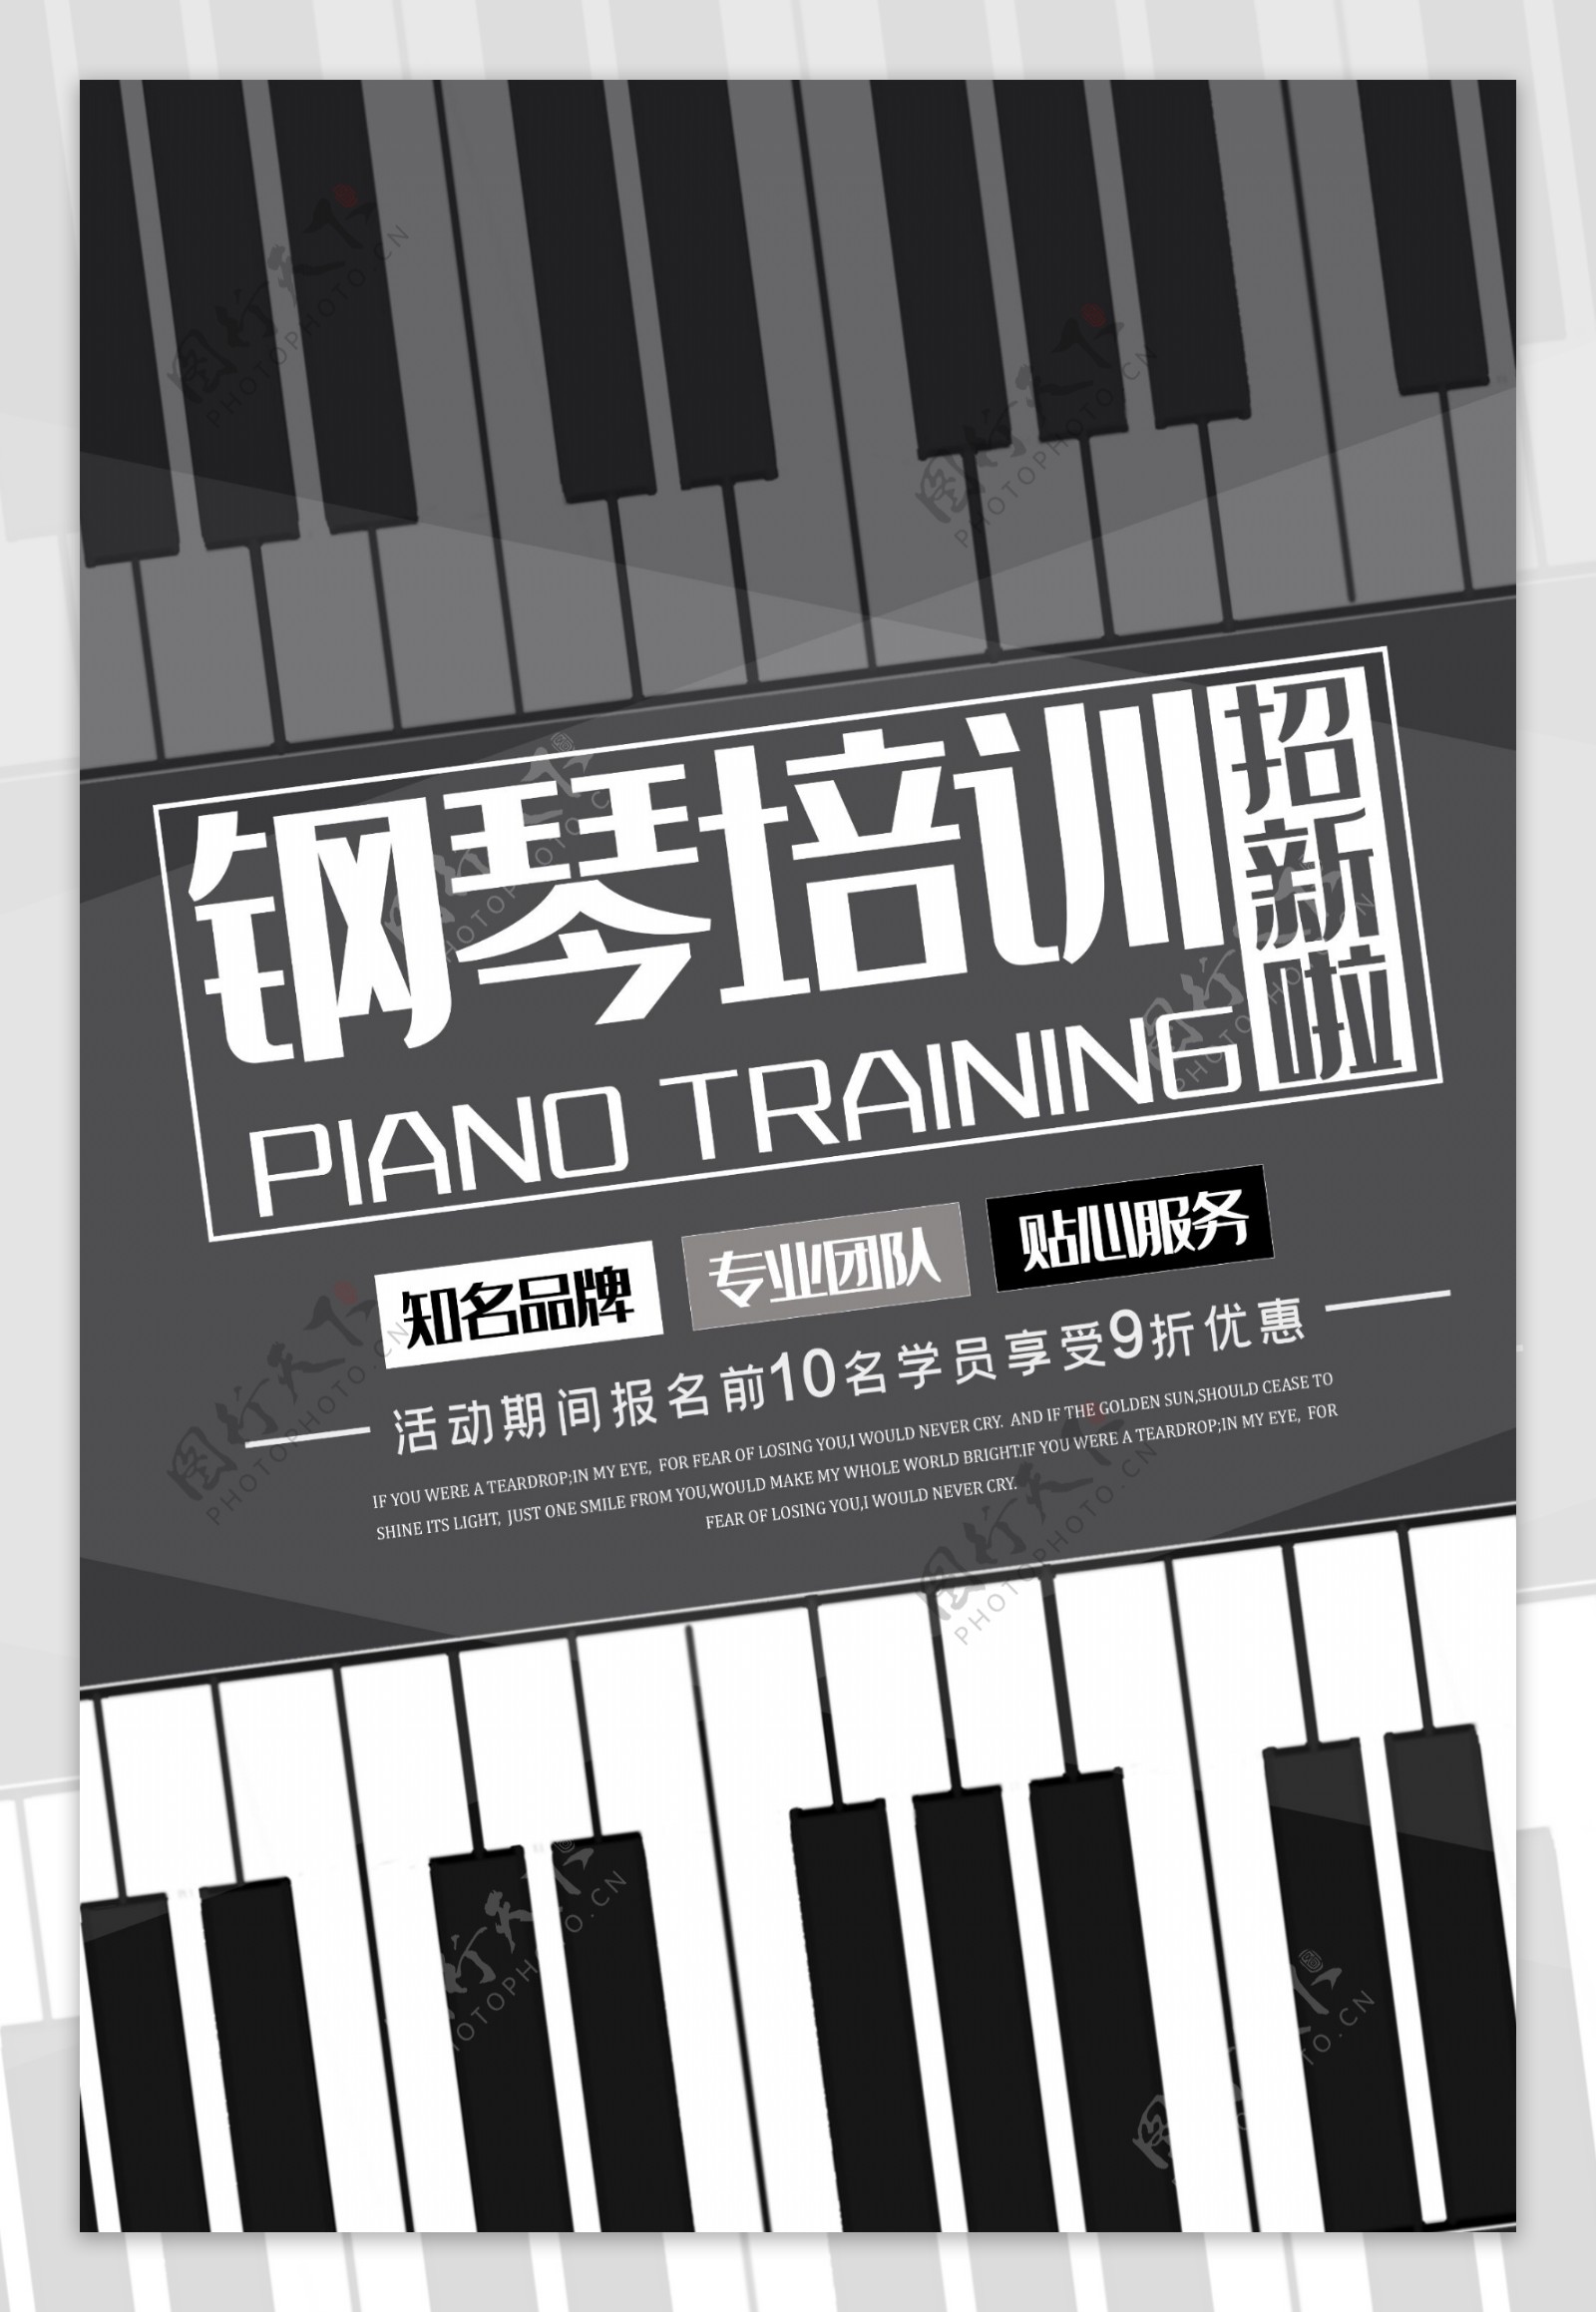 钢琴培训